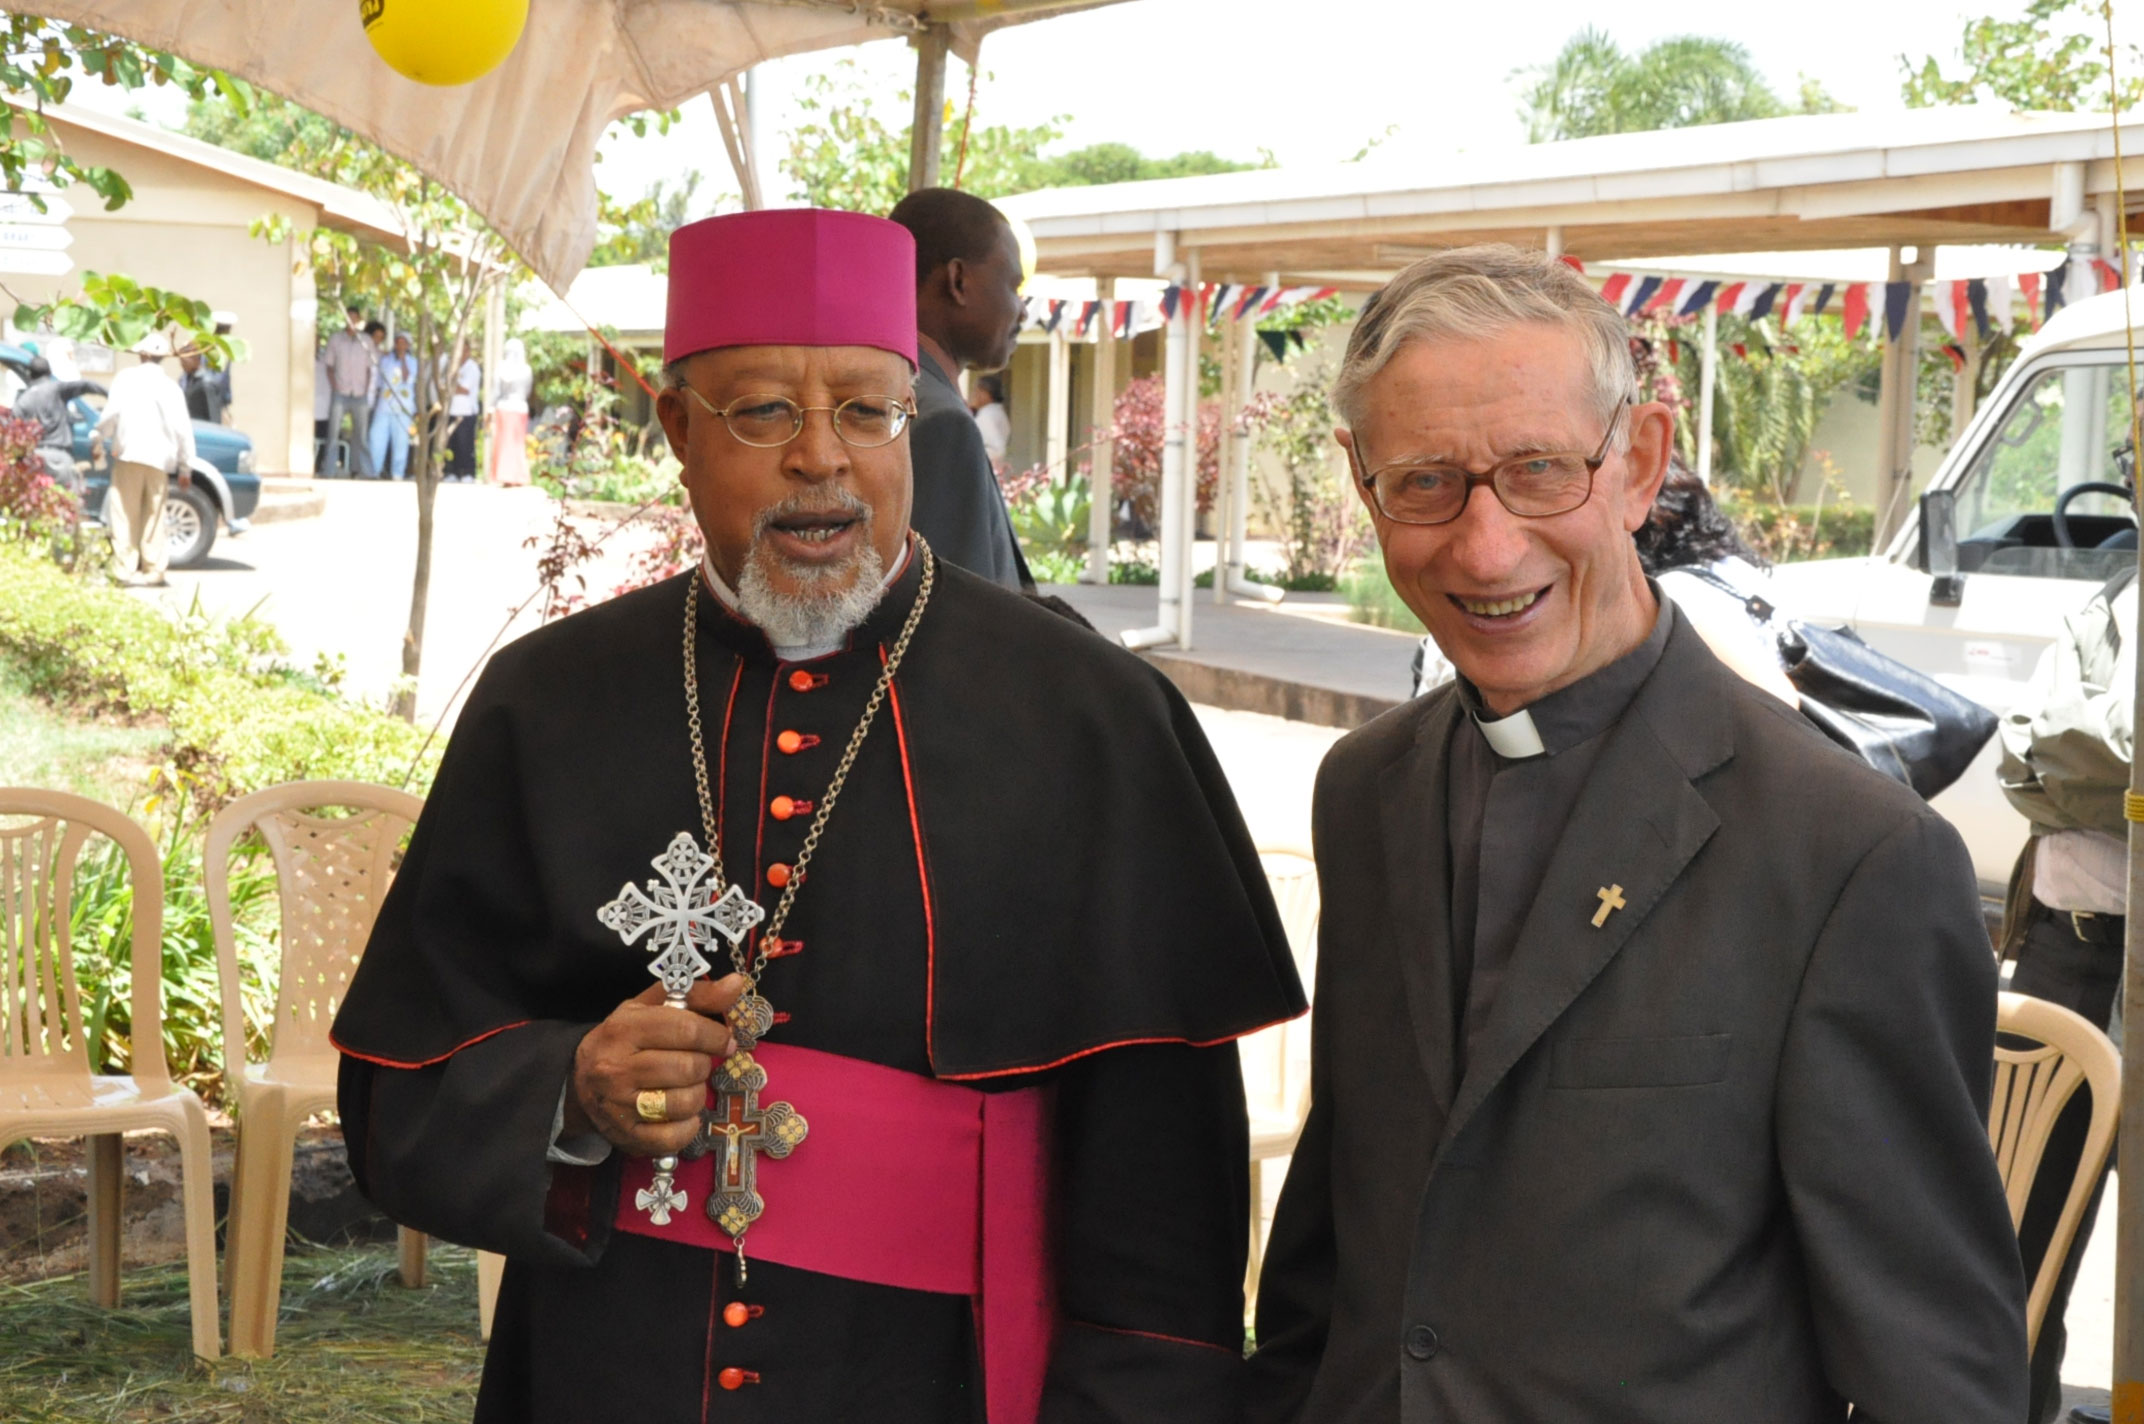 Эфиопия: при посредничестве Католической Церкви завершился межэтнический конфликт